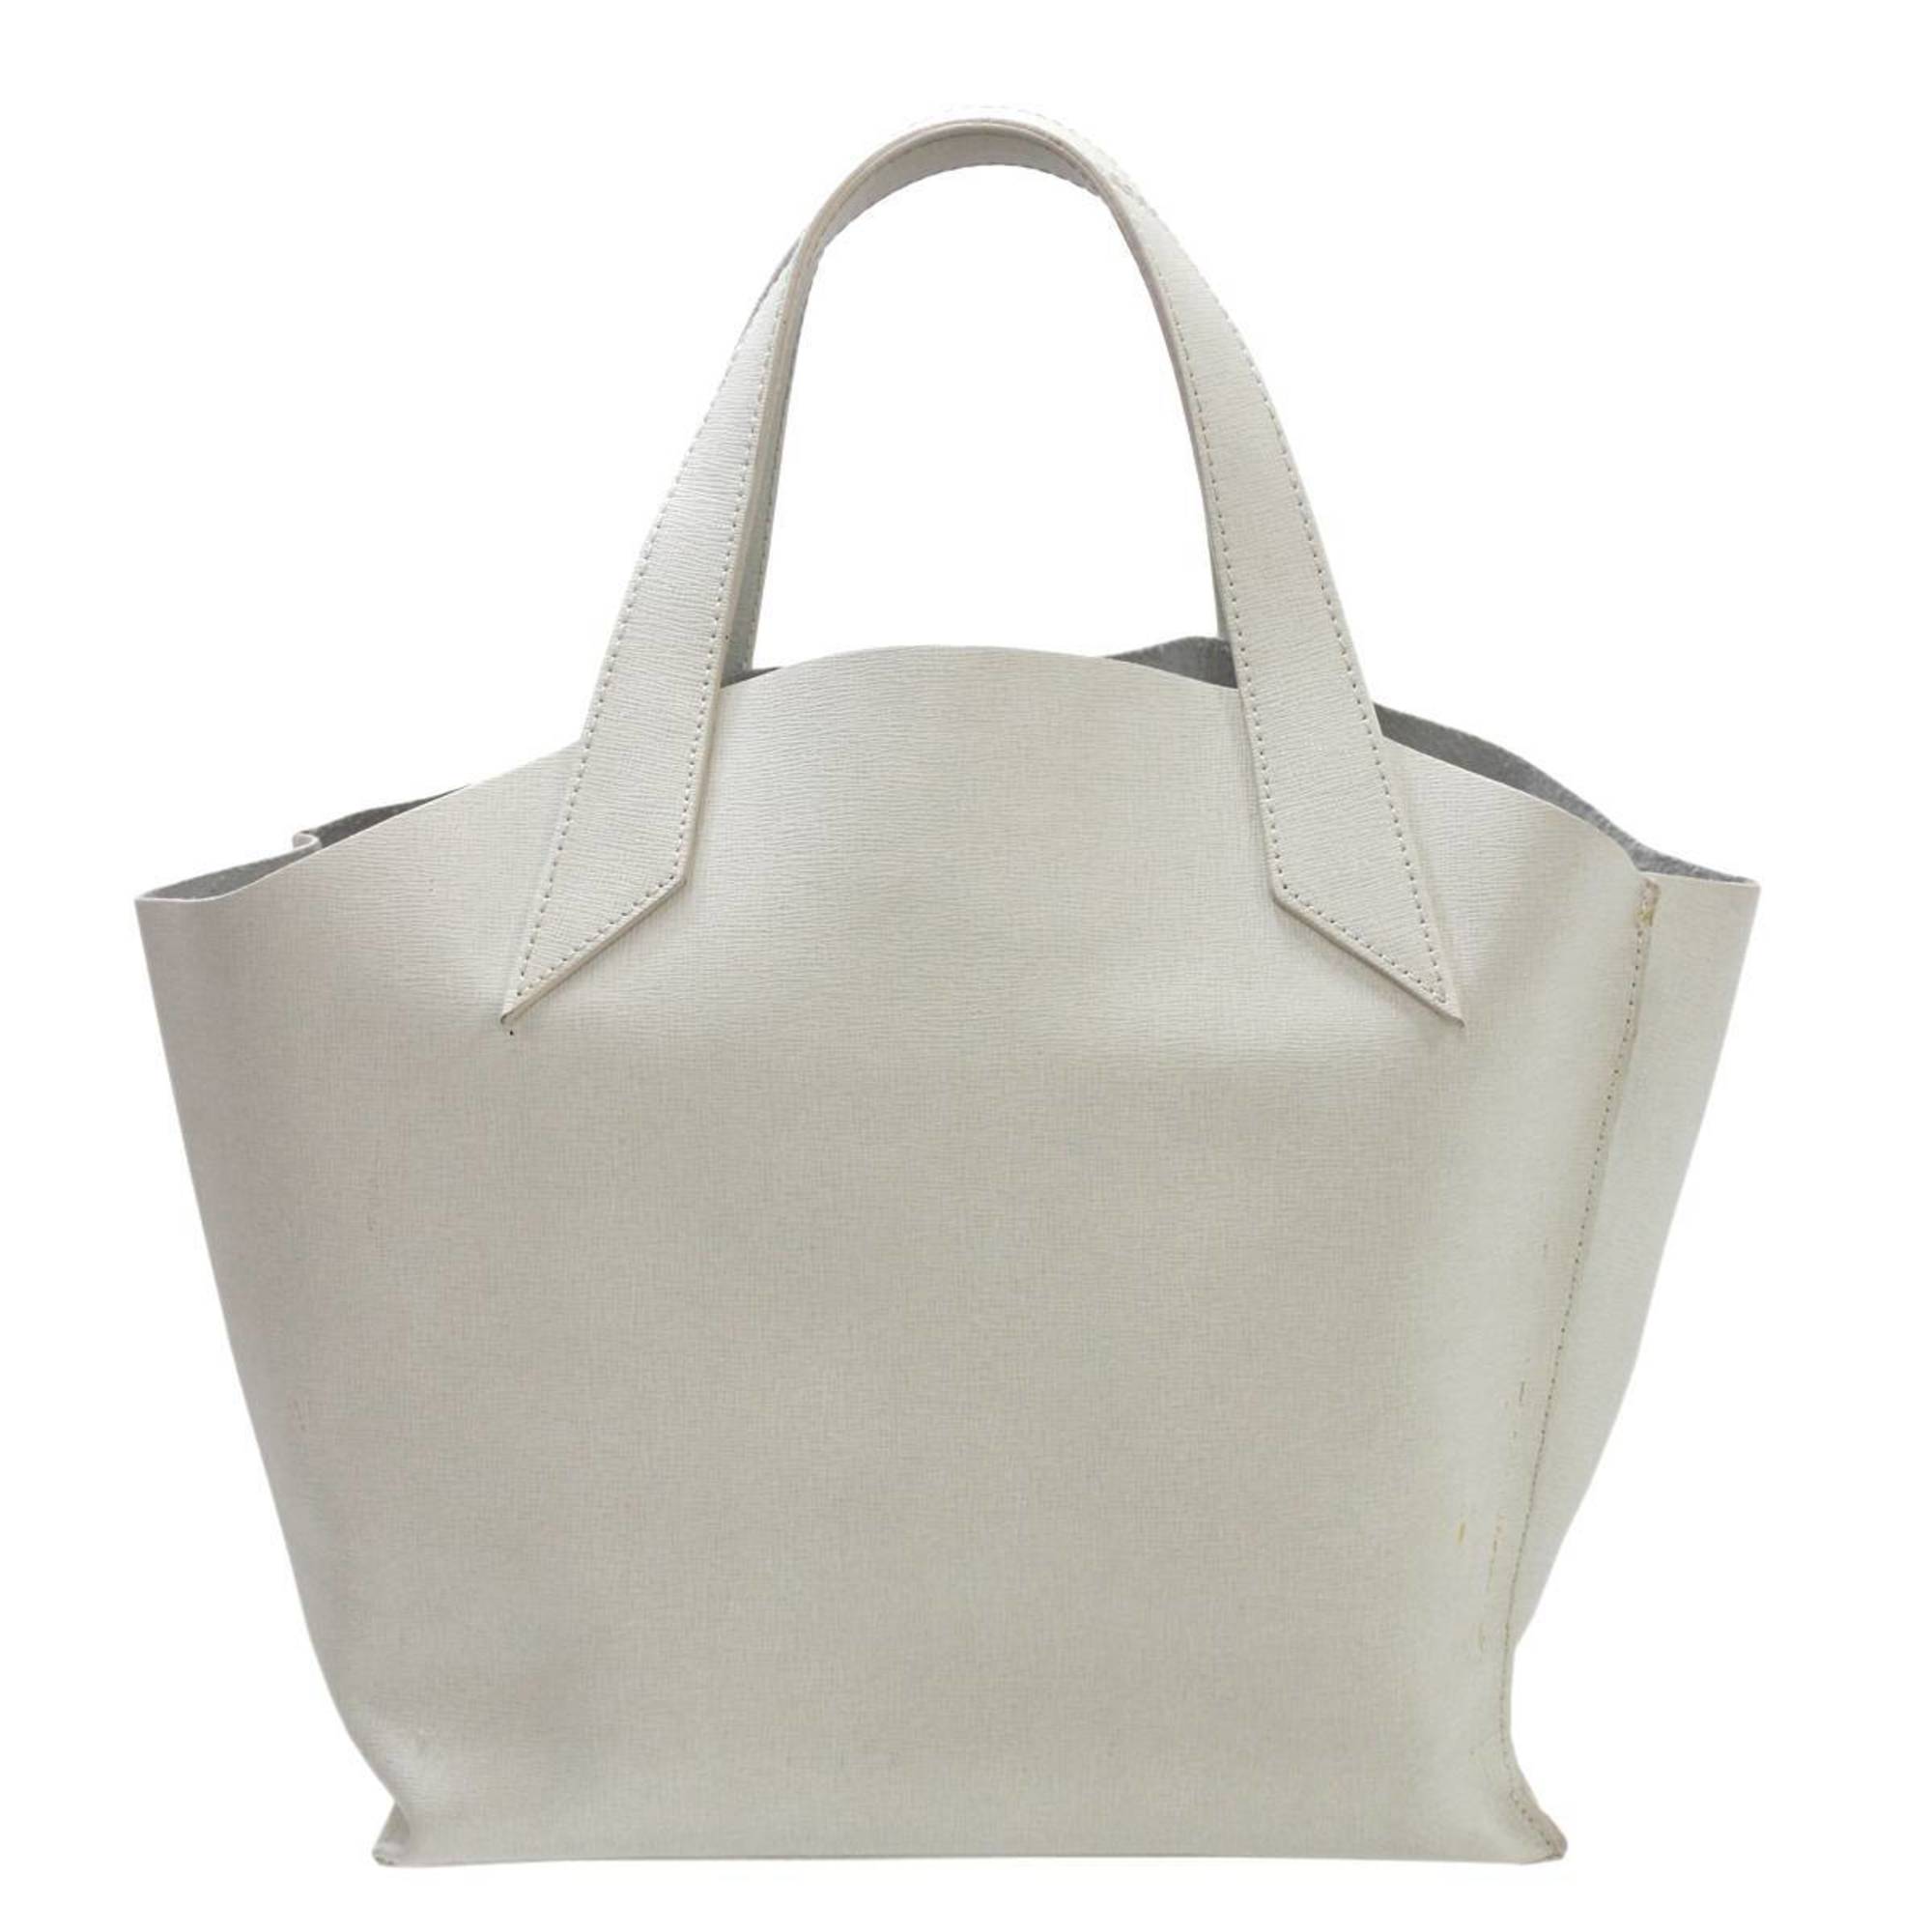 FURLA handbag white